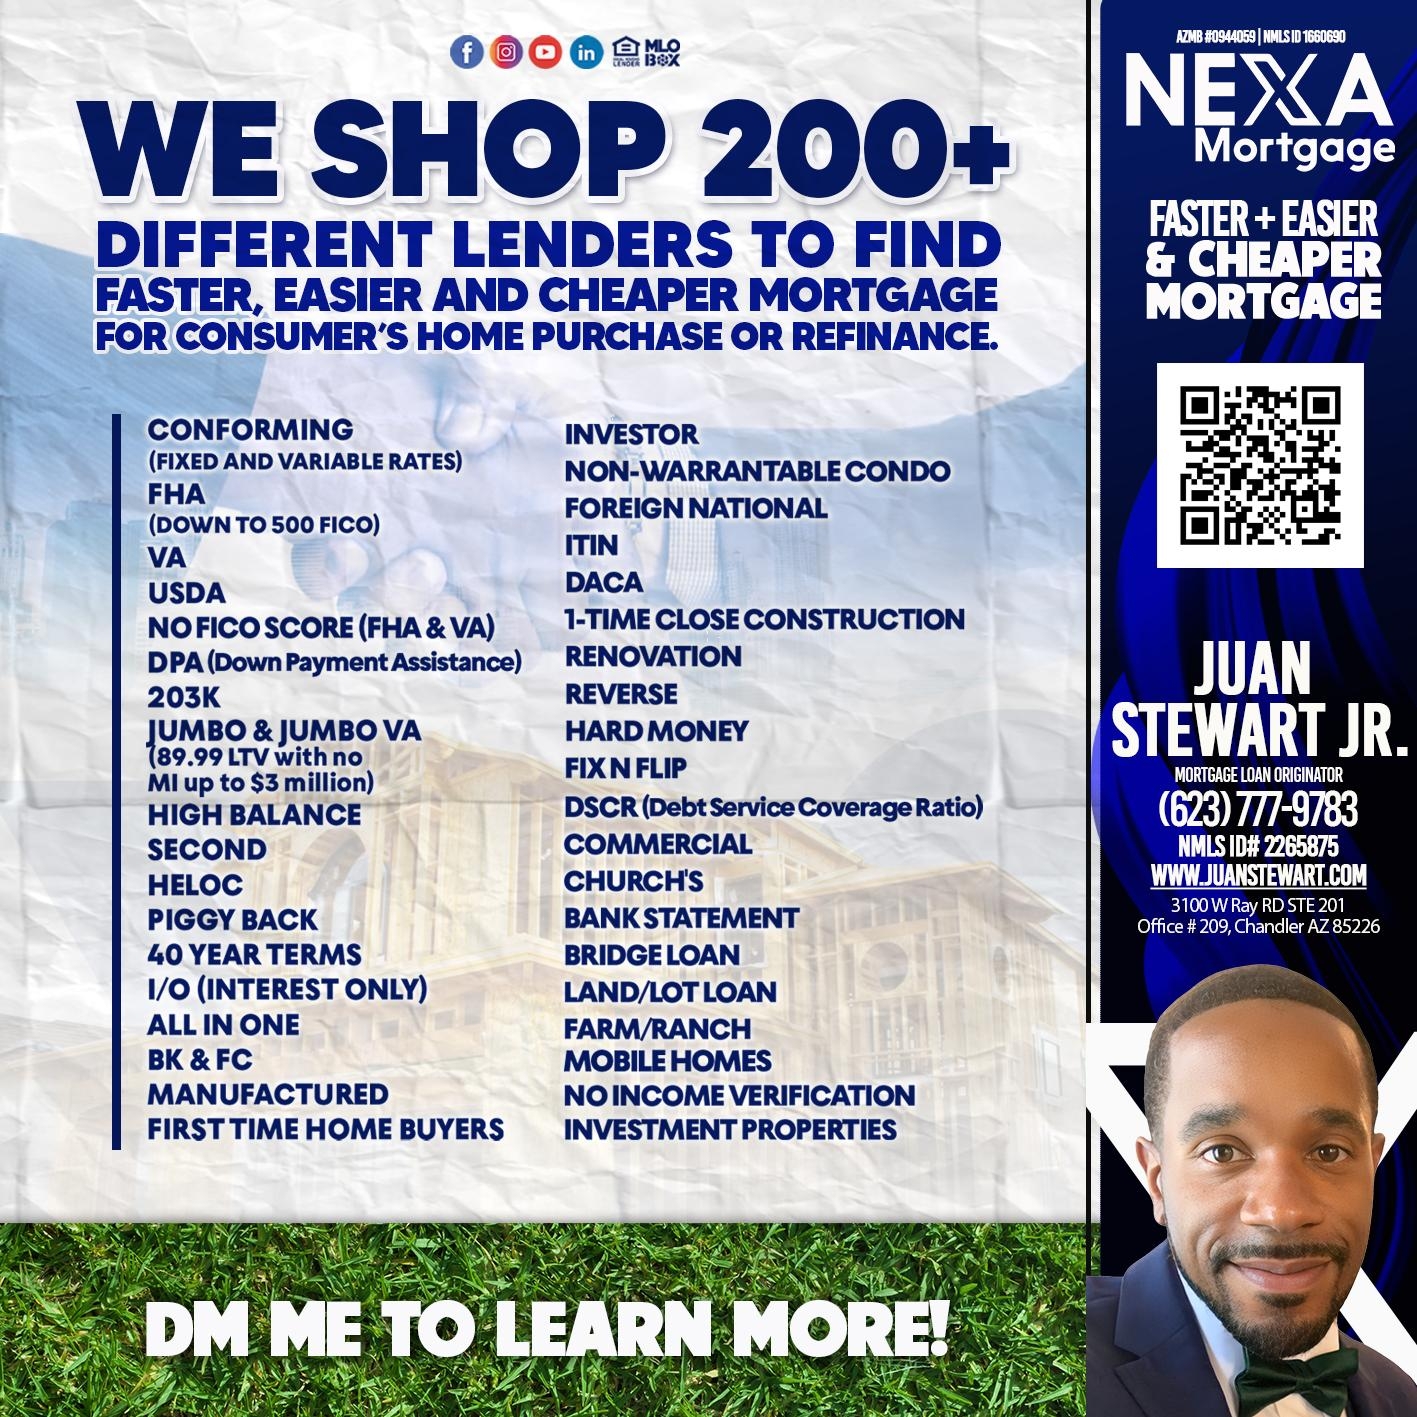 WE SHOP 200+ - Juan Stewart JR -Mortgage Loan Originator